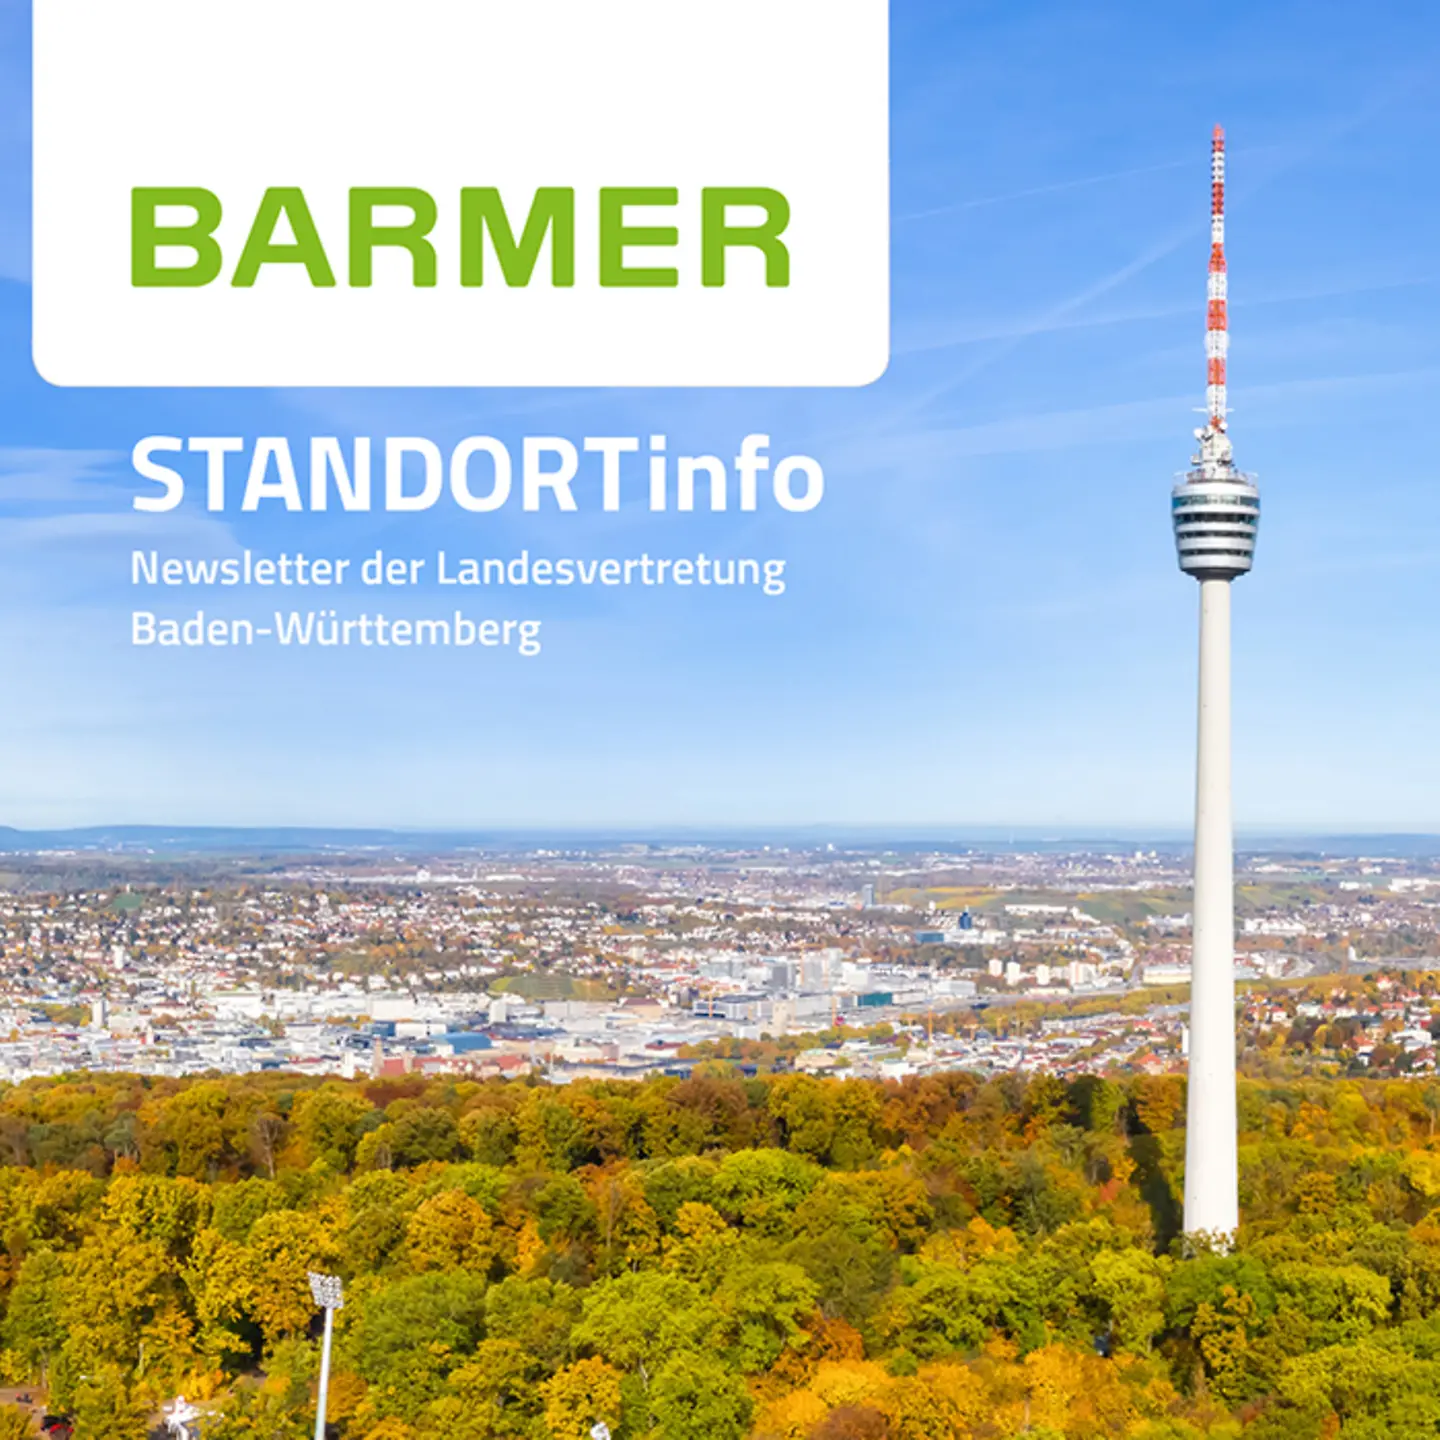 Das Titelbild der Barmer-Standortinfo zeigt den Stuttgarter Fernsehturm, mit Stuttgart im Hintergrund